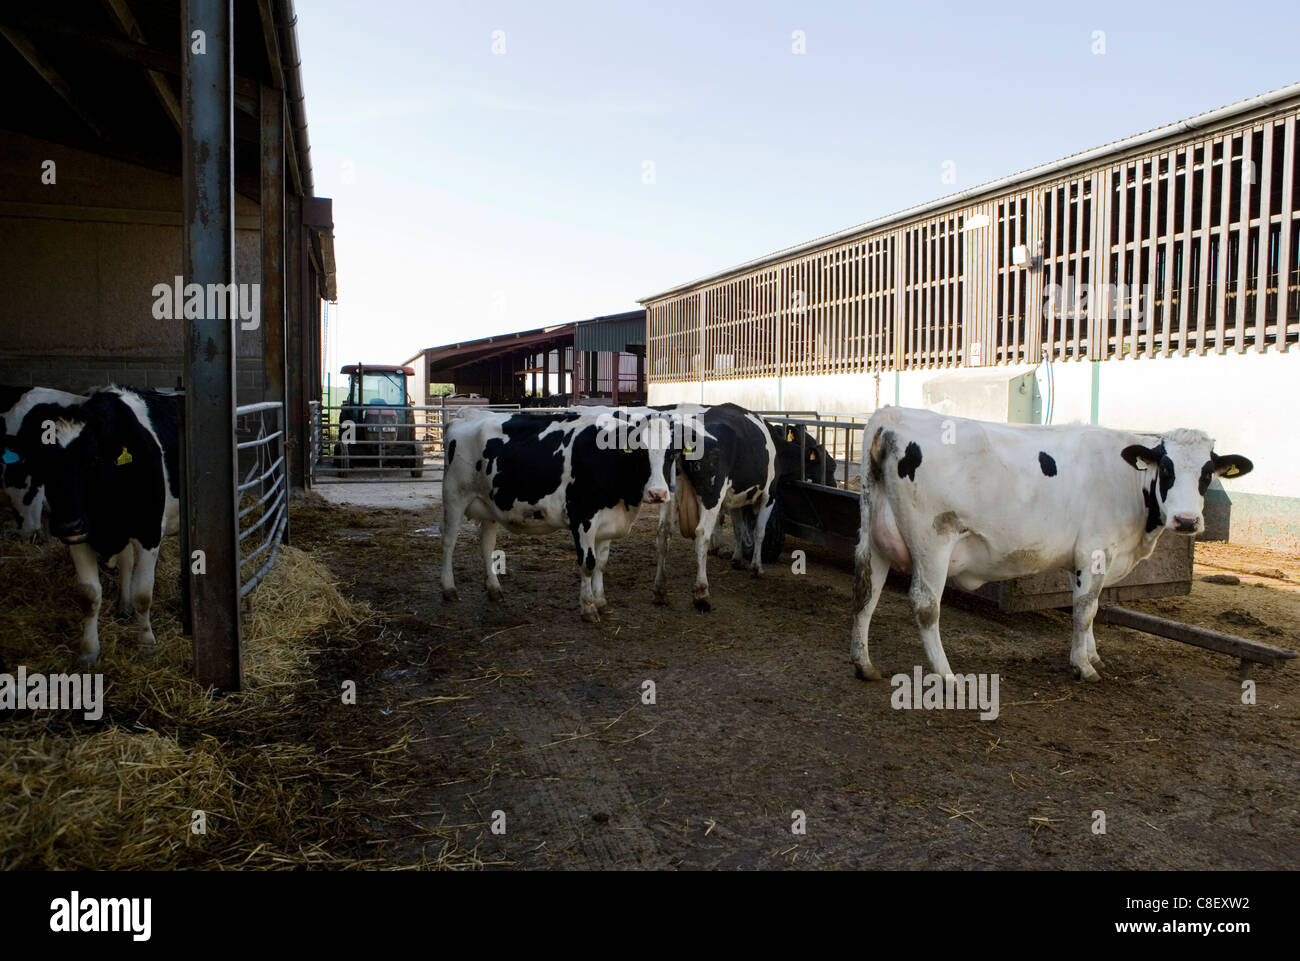 Les bovins laitiers Groupe d'adultes dans une ferme laitière Dorset, UK Banque D'Images